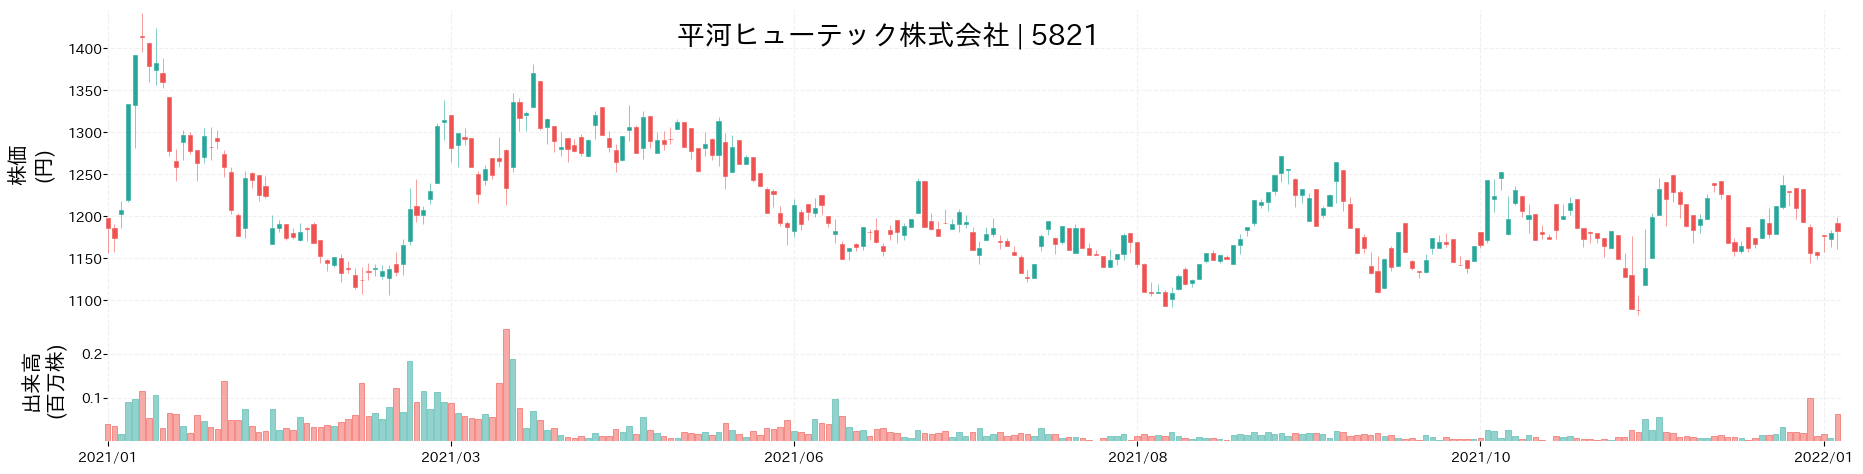 平河ヒューテックの株価推移(2021)